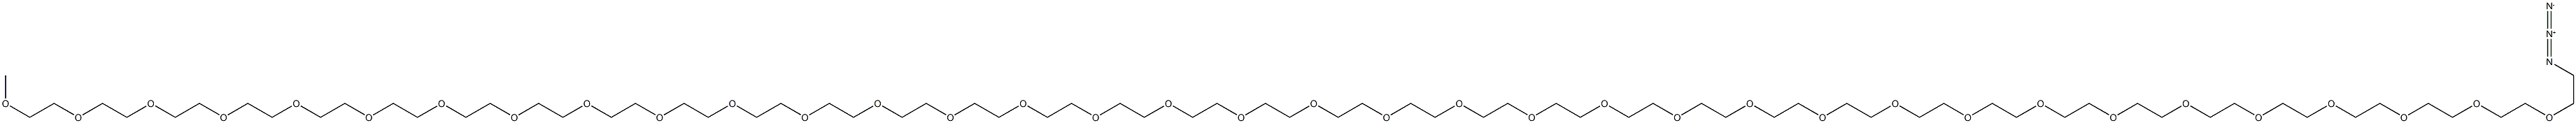 O-(2-Azidoethyl)-Oμ-methylpolyethylene glycol